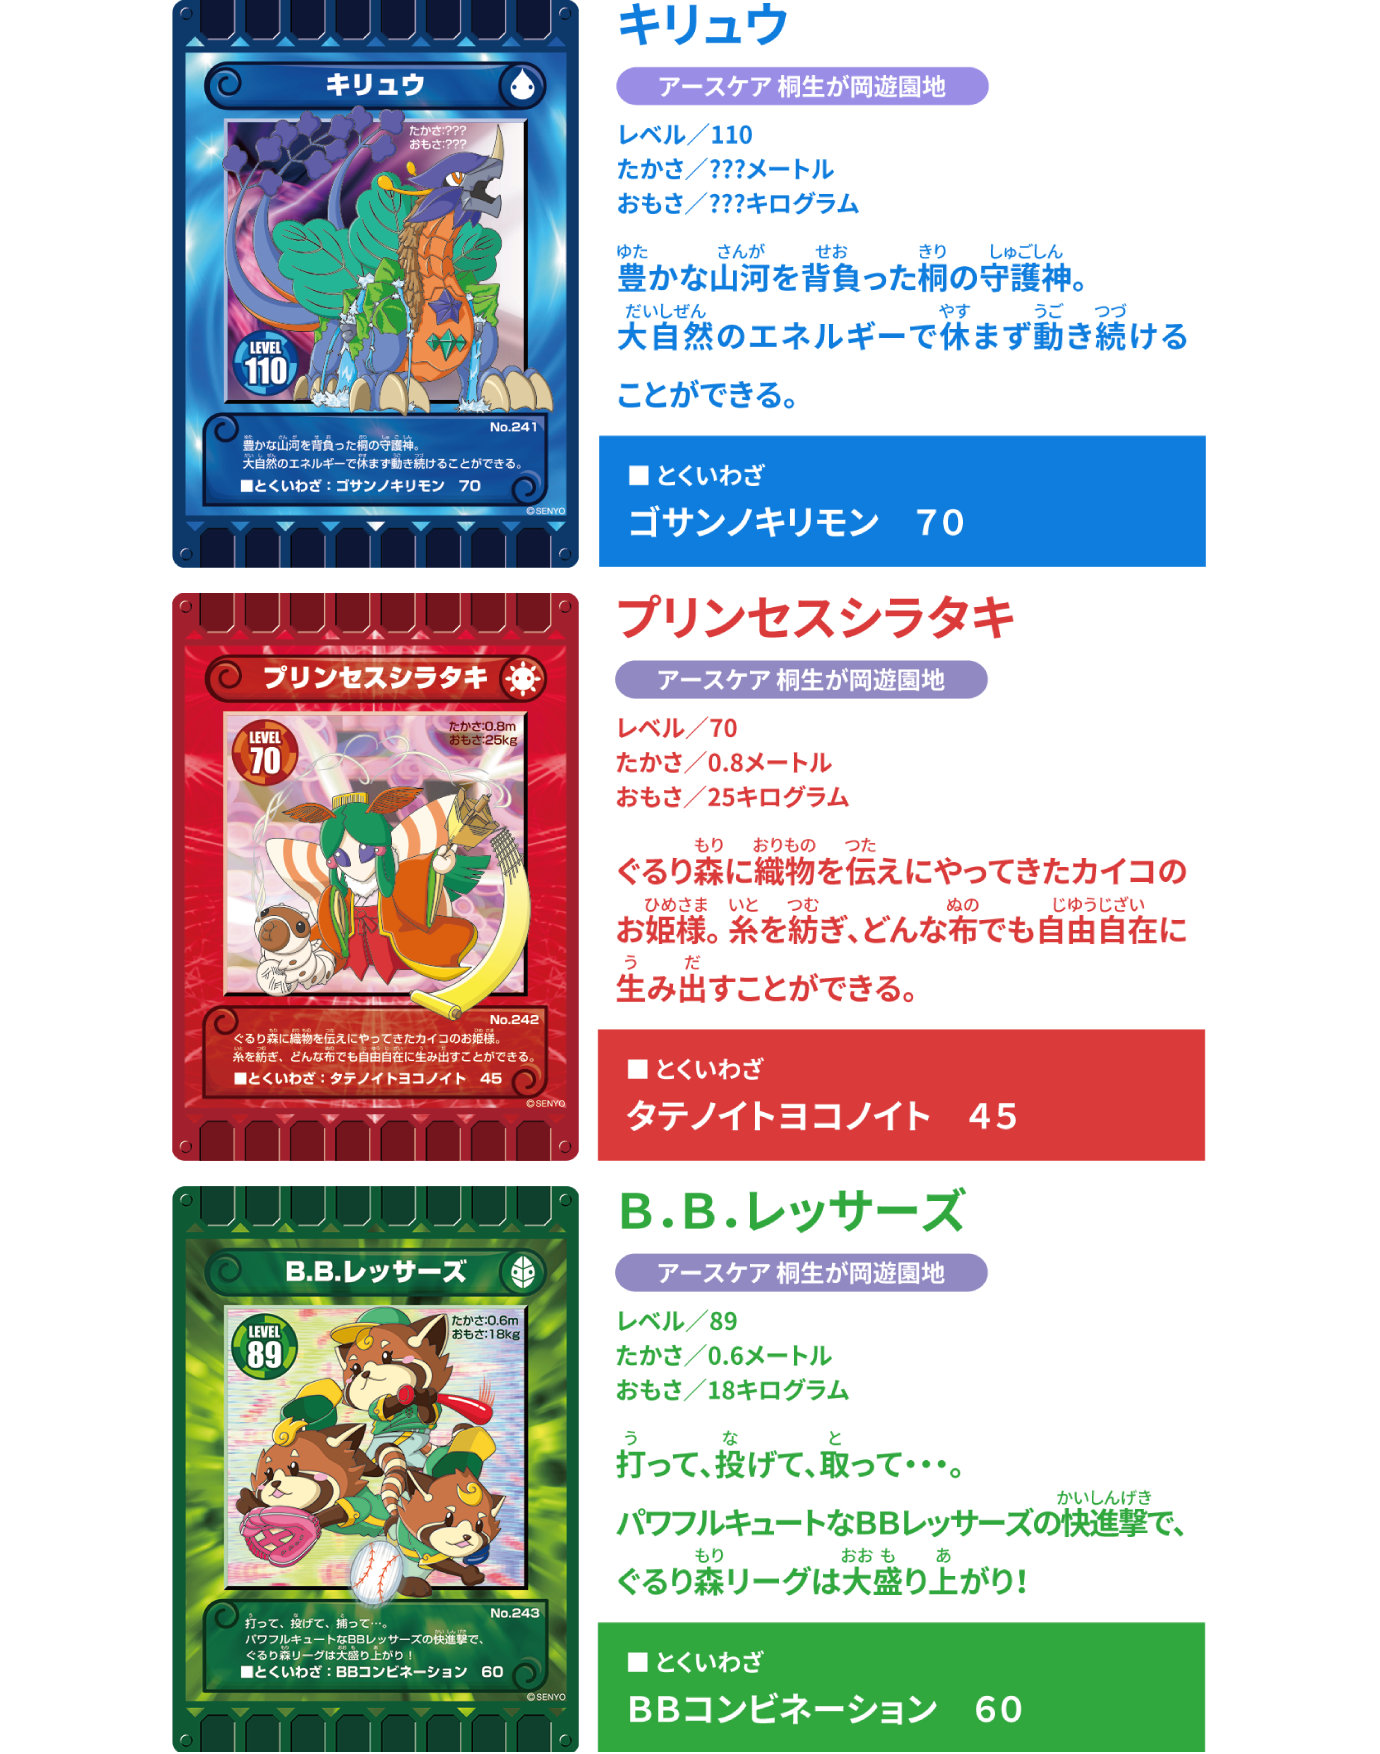 BBレッサーズぐるり森 カード アースケア桐生が岡遊園地限定 - カード